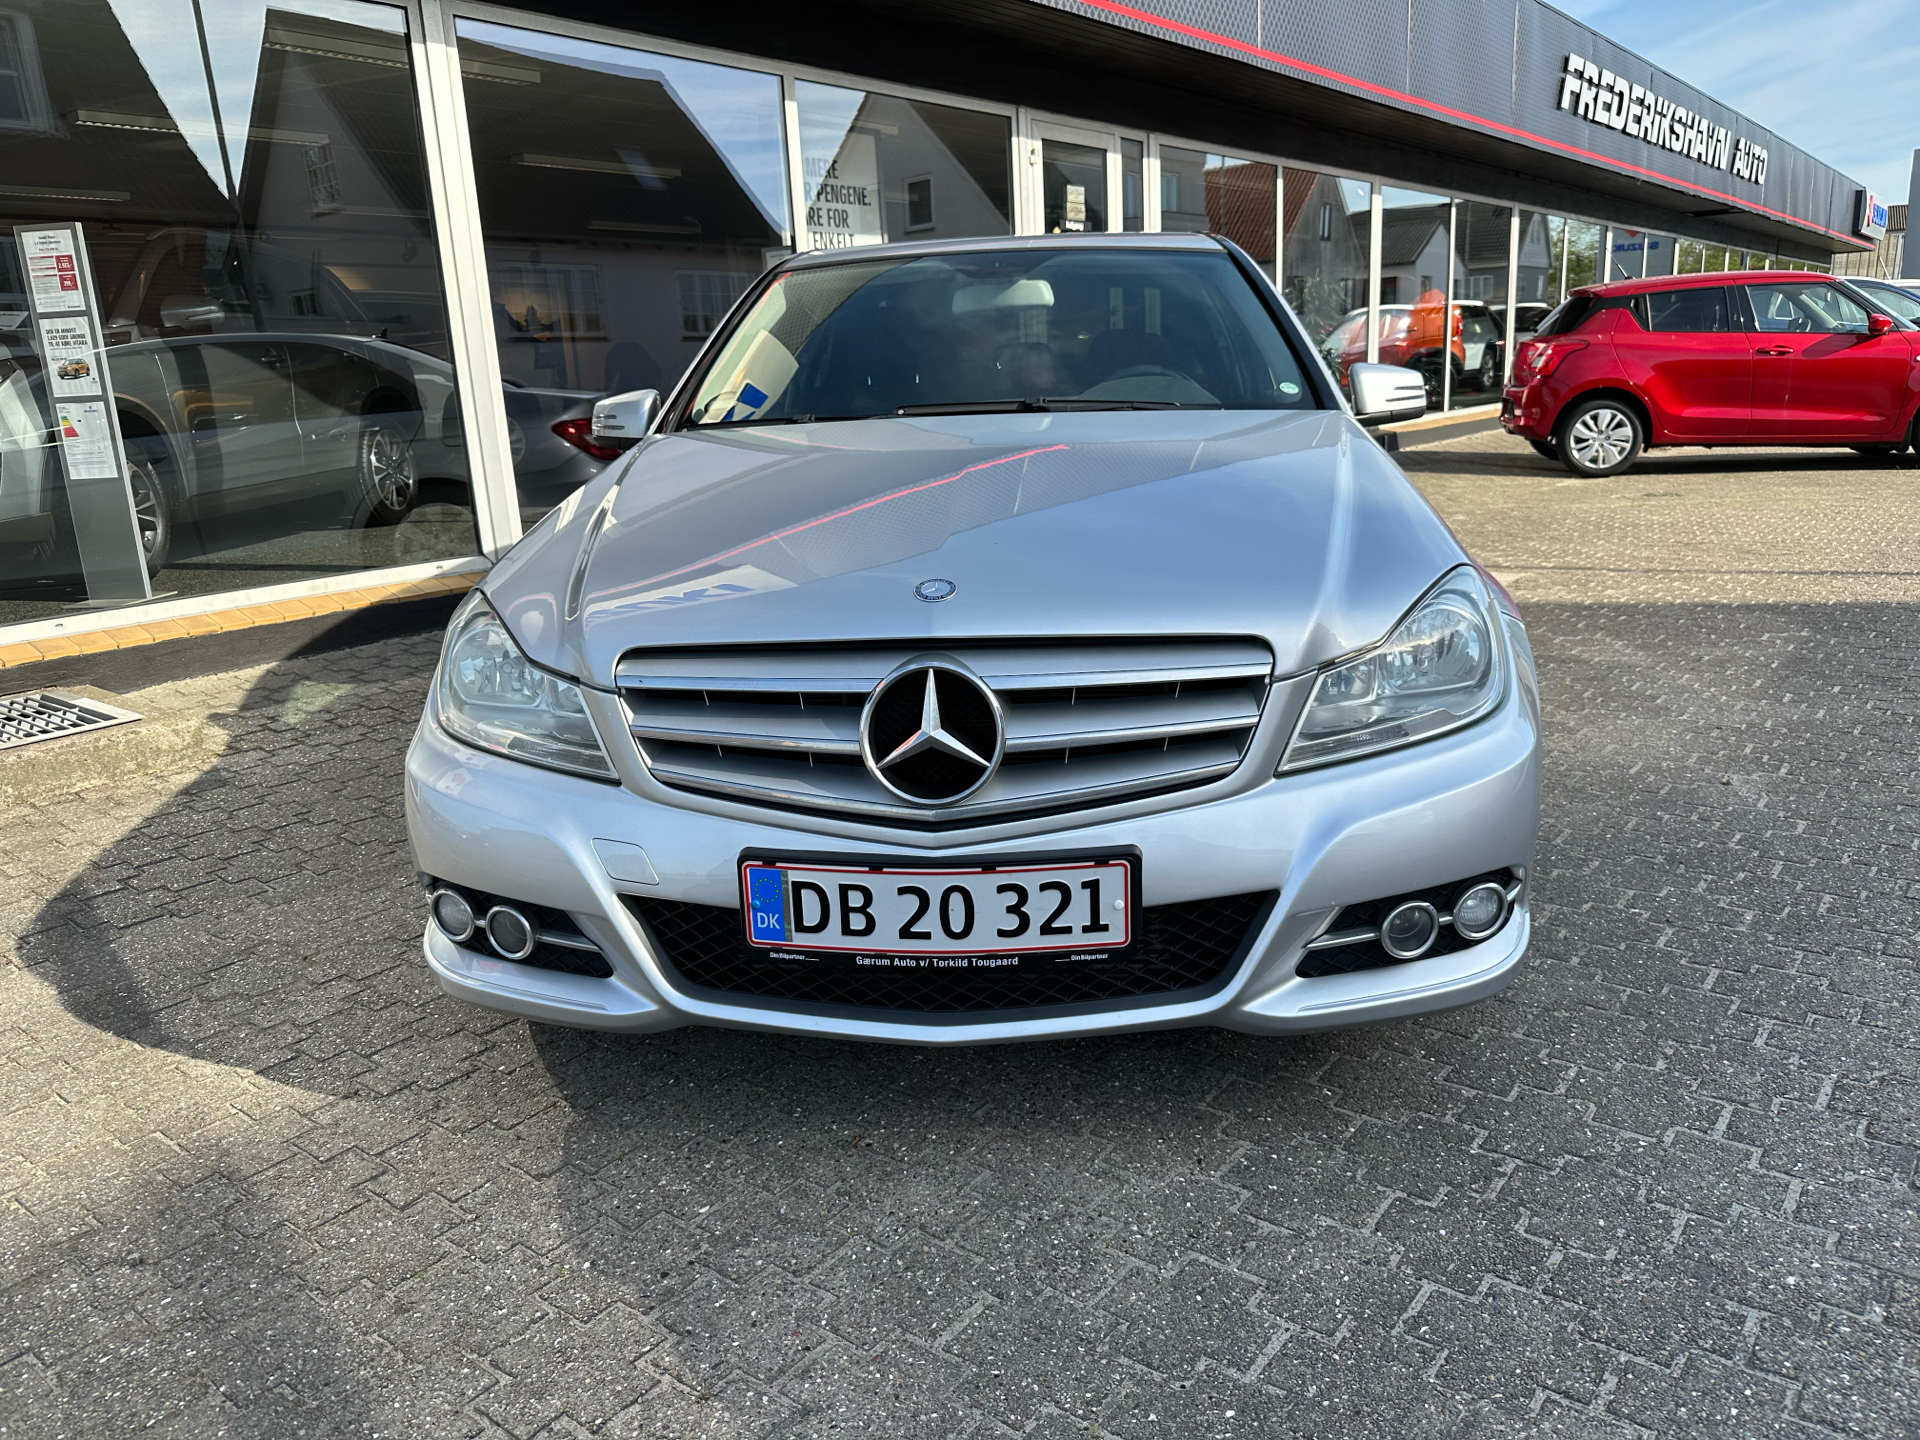 Billede af Mercedes-Benz C220 d 2,2 CDI BlueEfficiency 170HK 6g Aut.